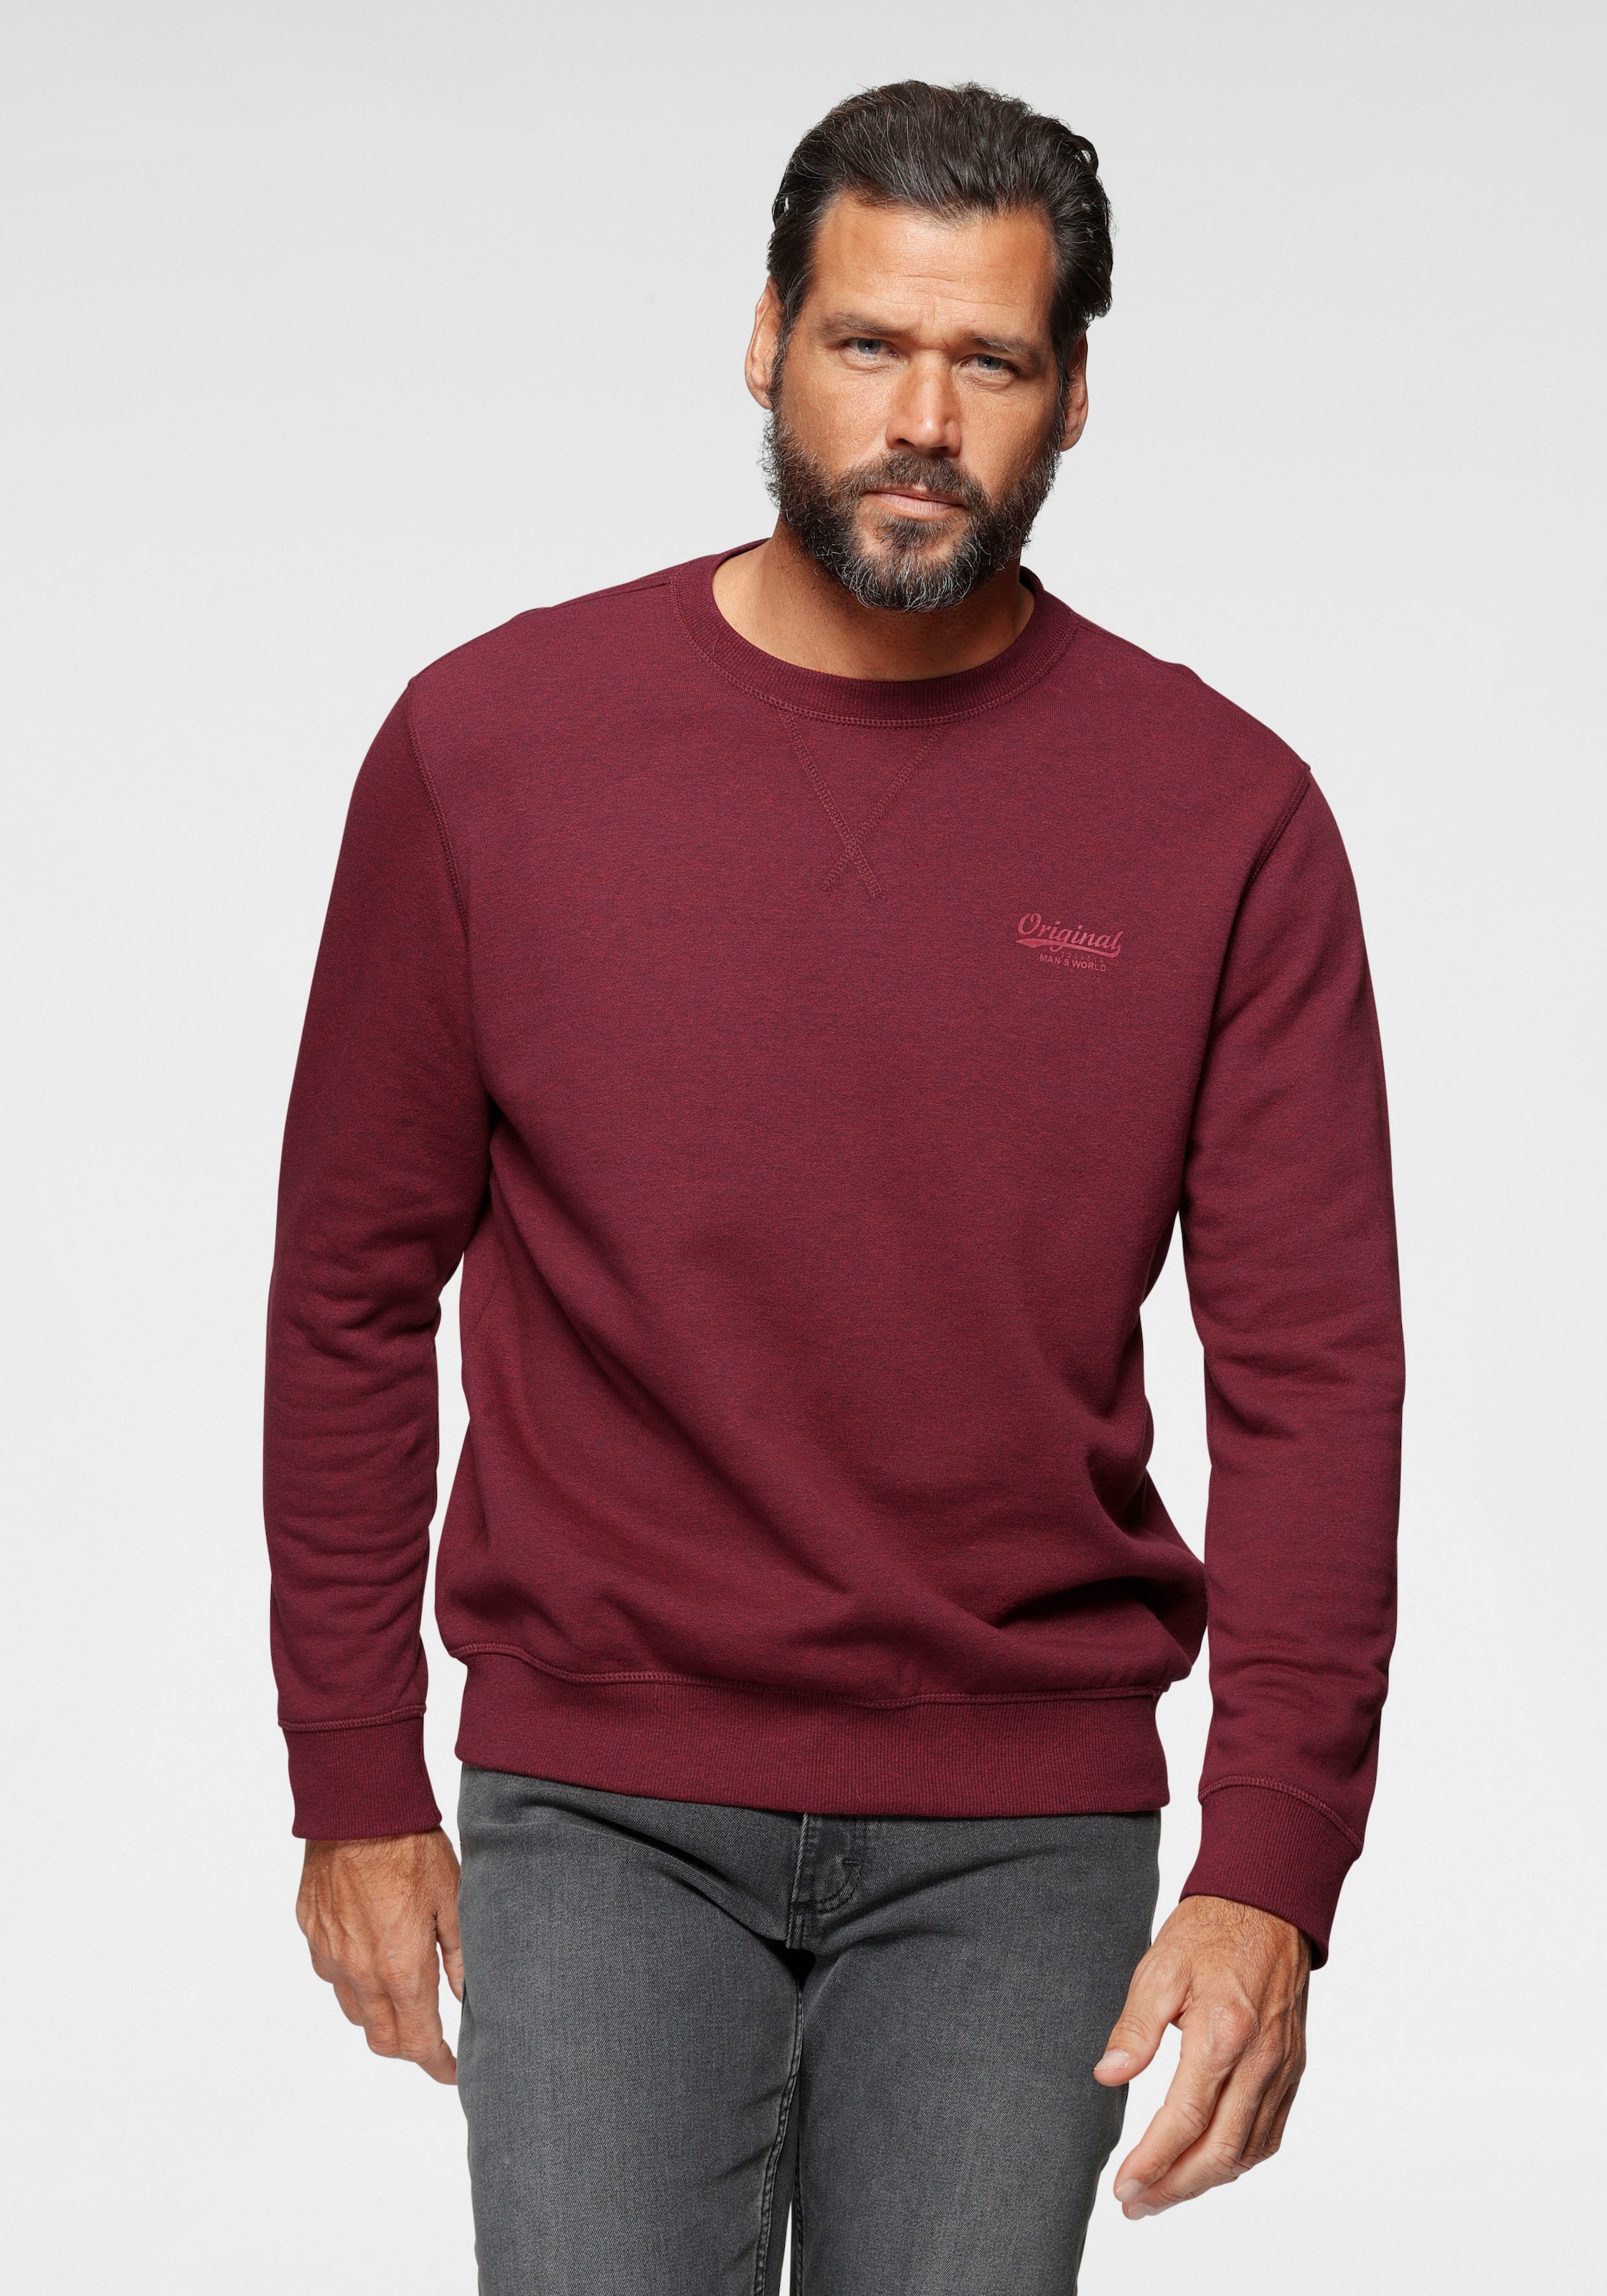 Man's World Sweatshirt, aus Baumwollmischung jetzt bestellen